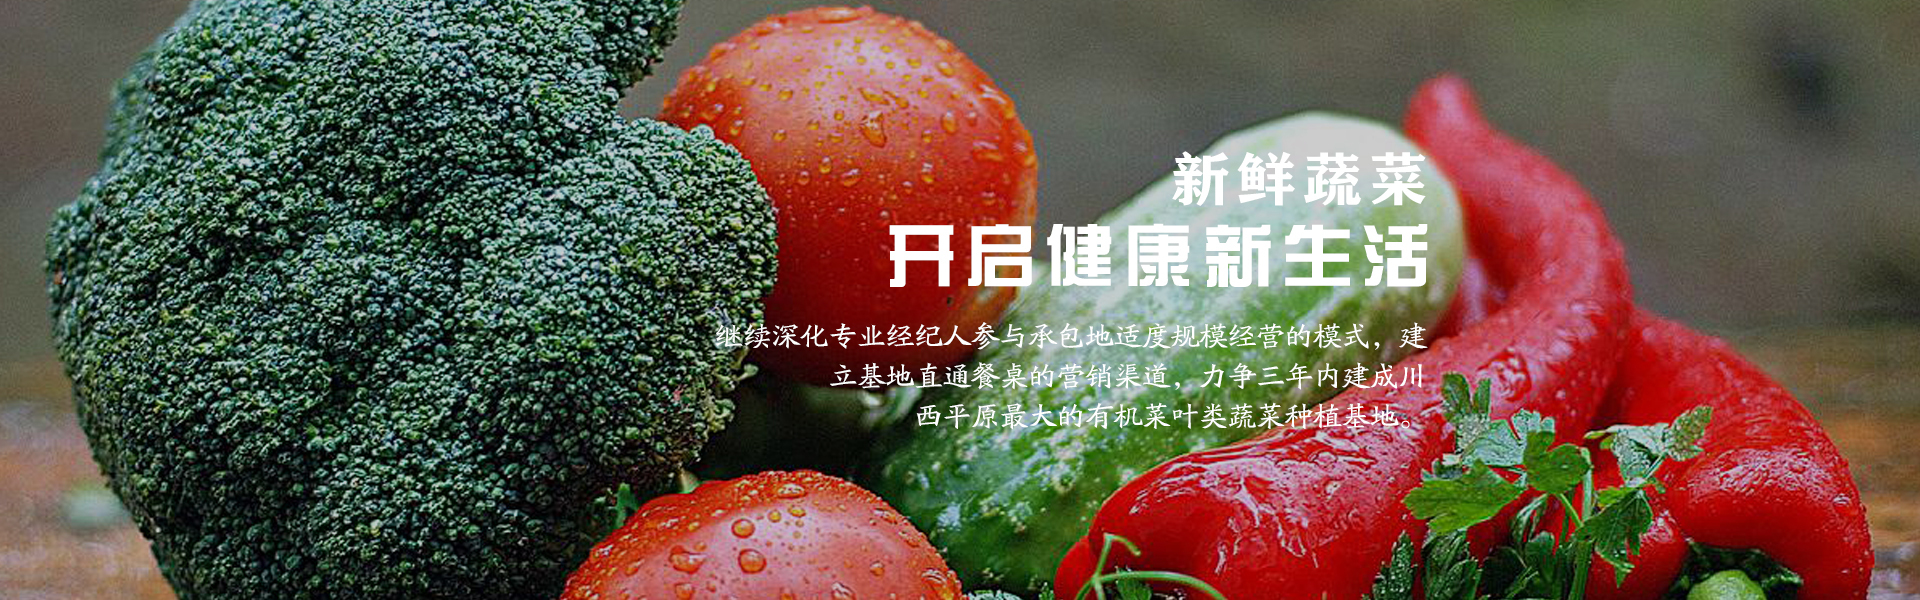 成都有机蔬菜招商平台_蔬菜罐头相关-成都市录超农业有限责任公司